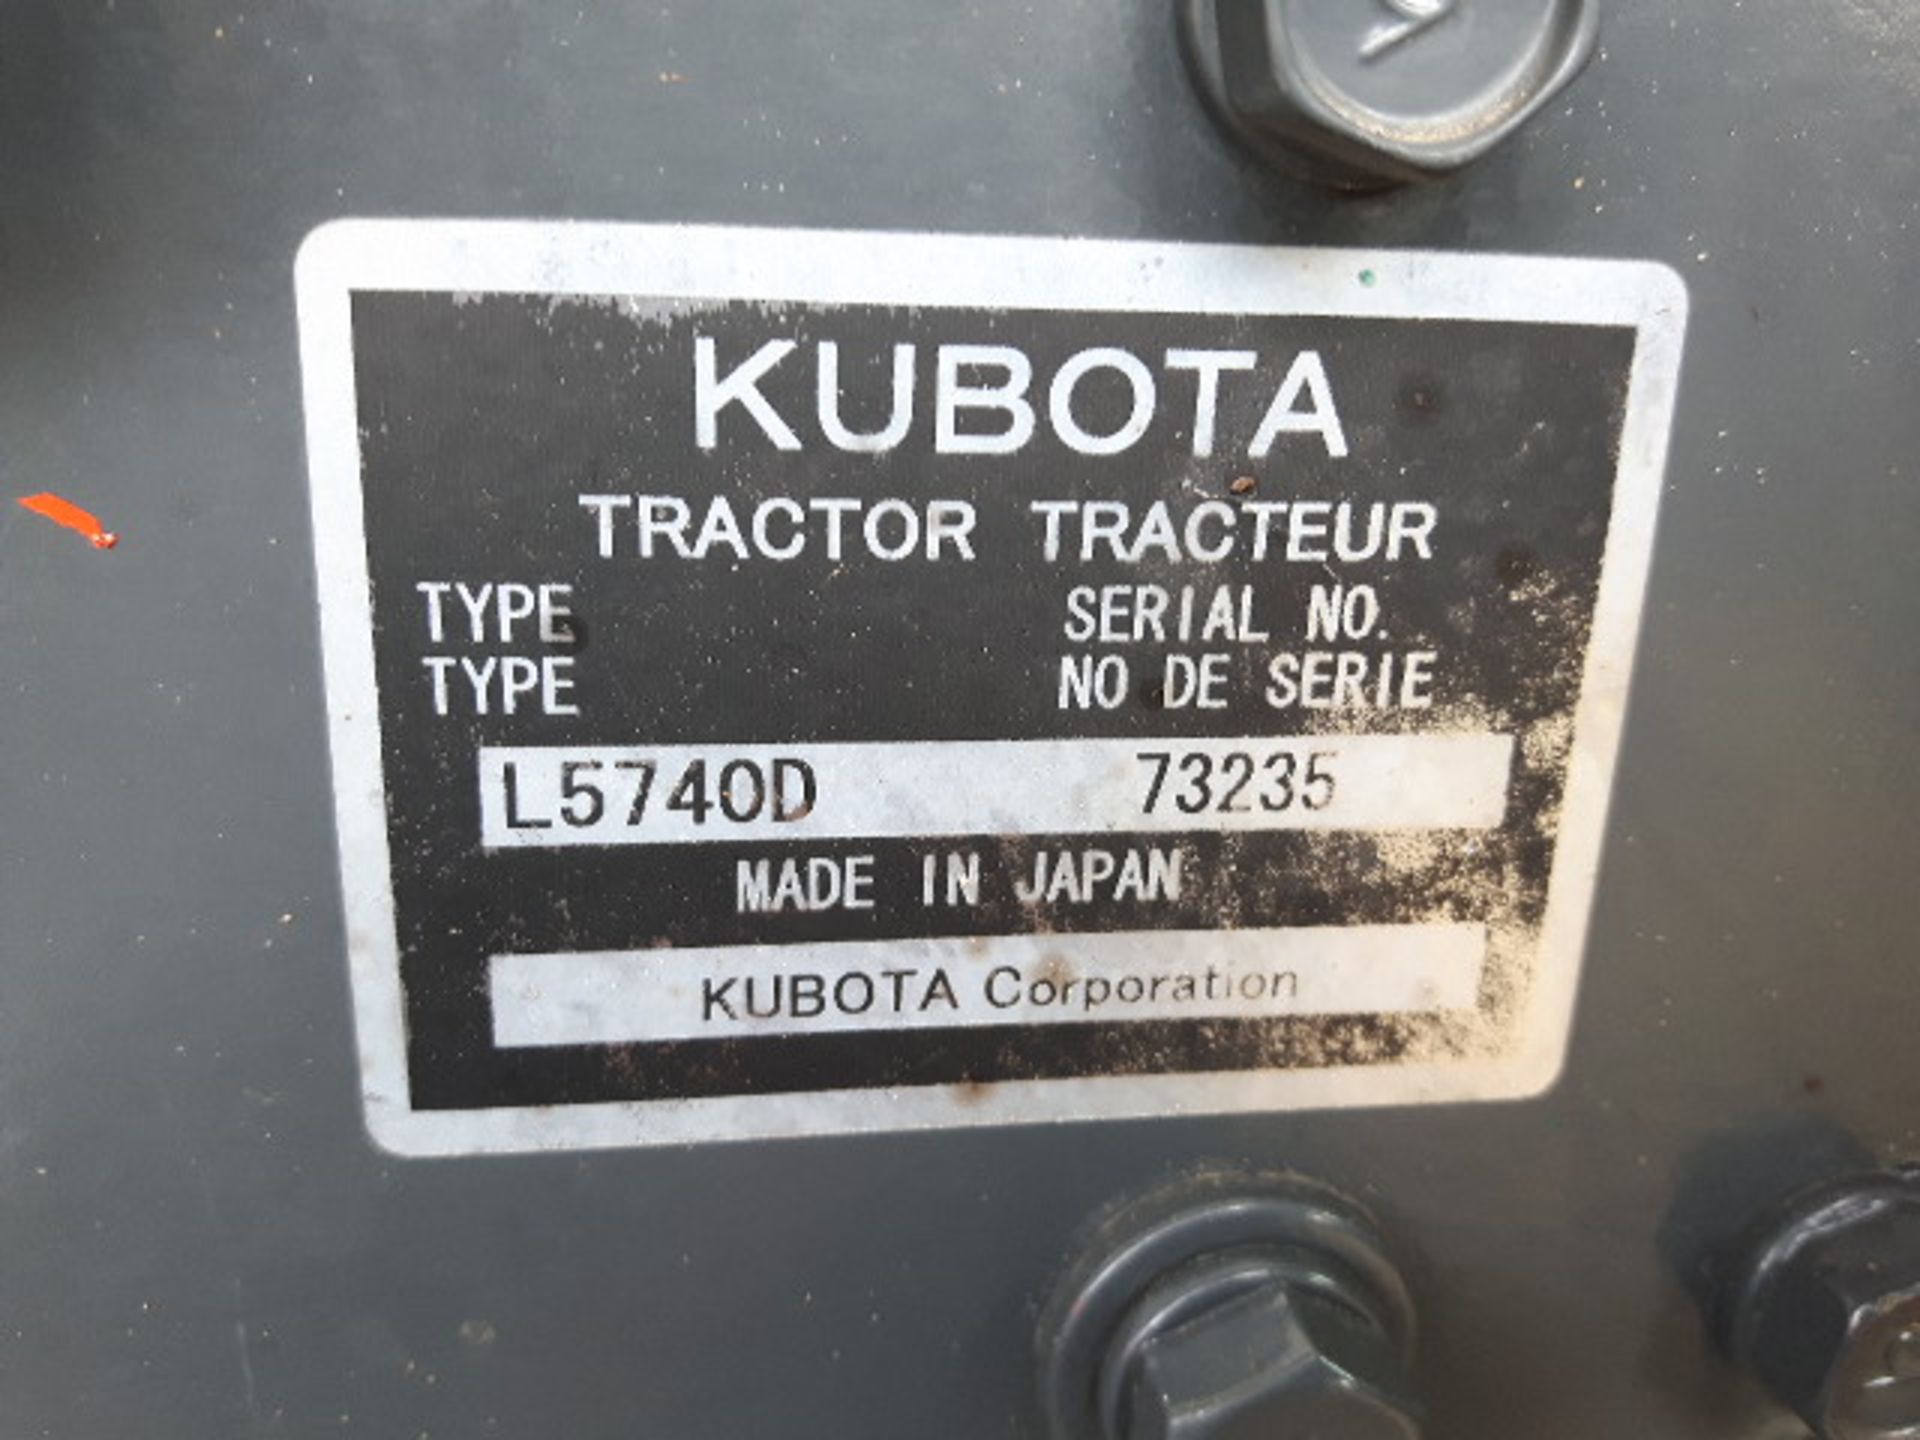 2012 Kubota L5740 Utility Tractor - Image 6 of 6